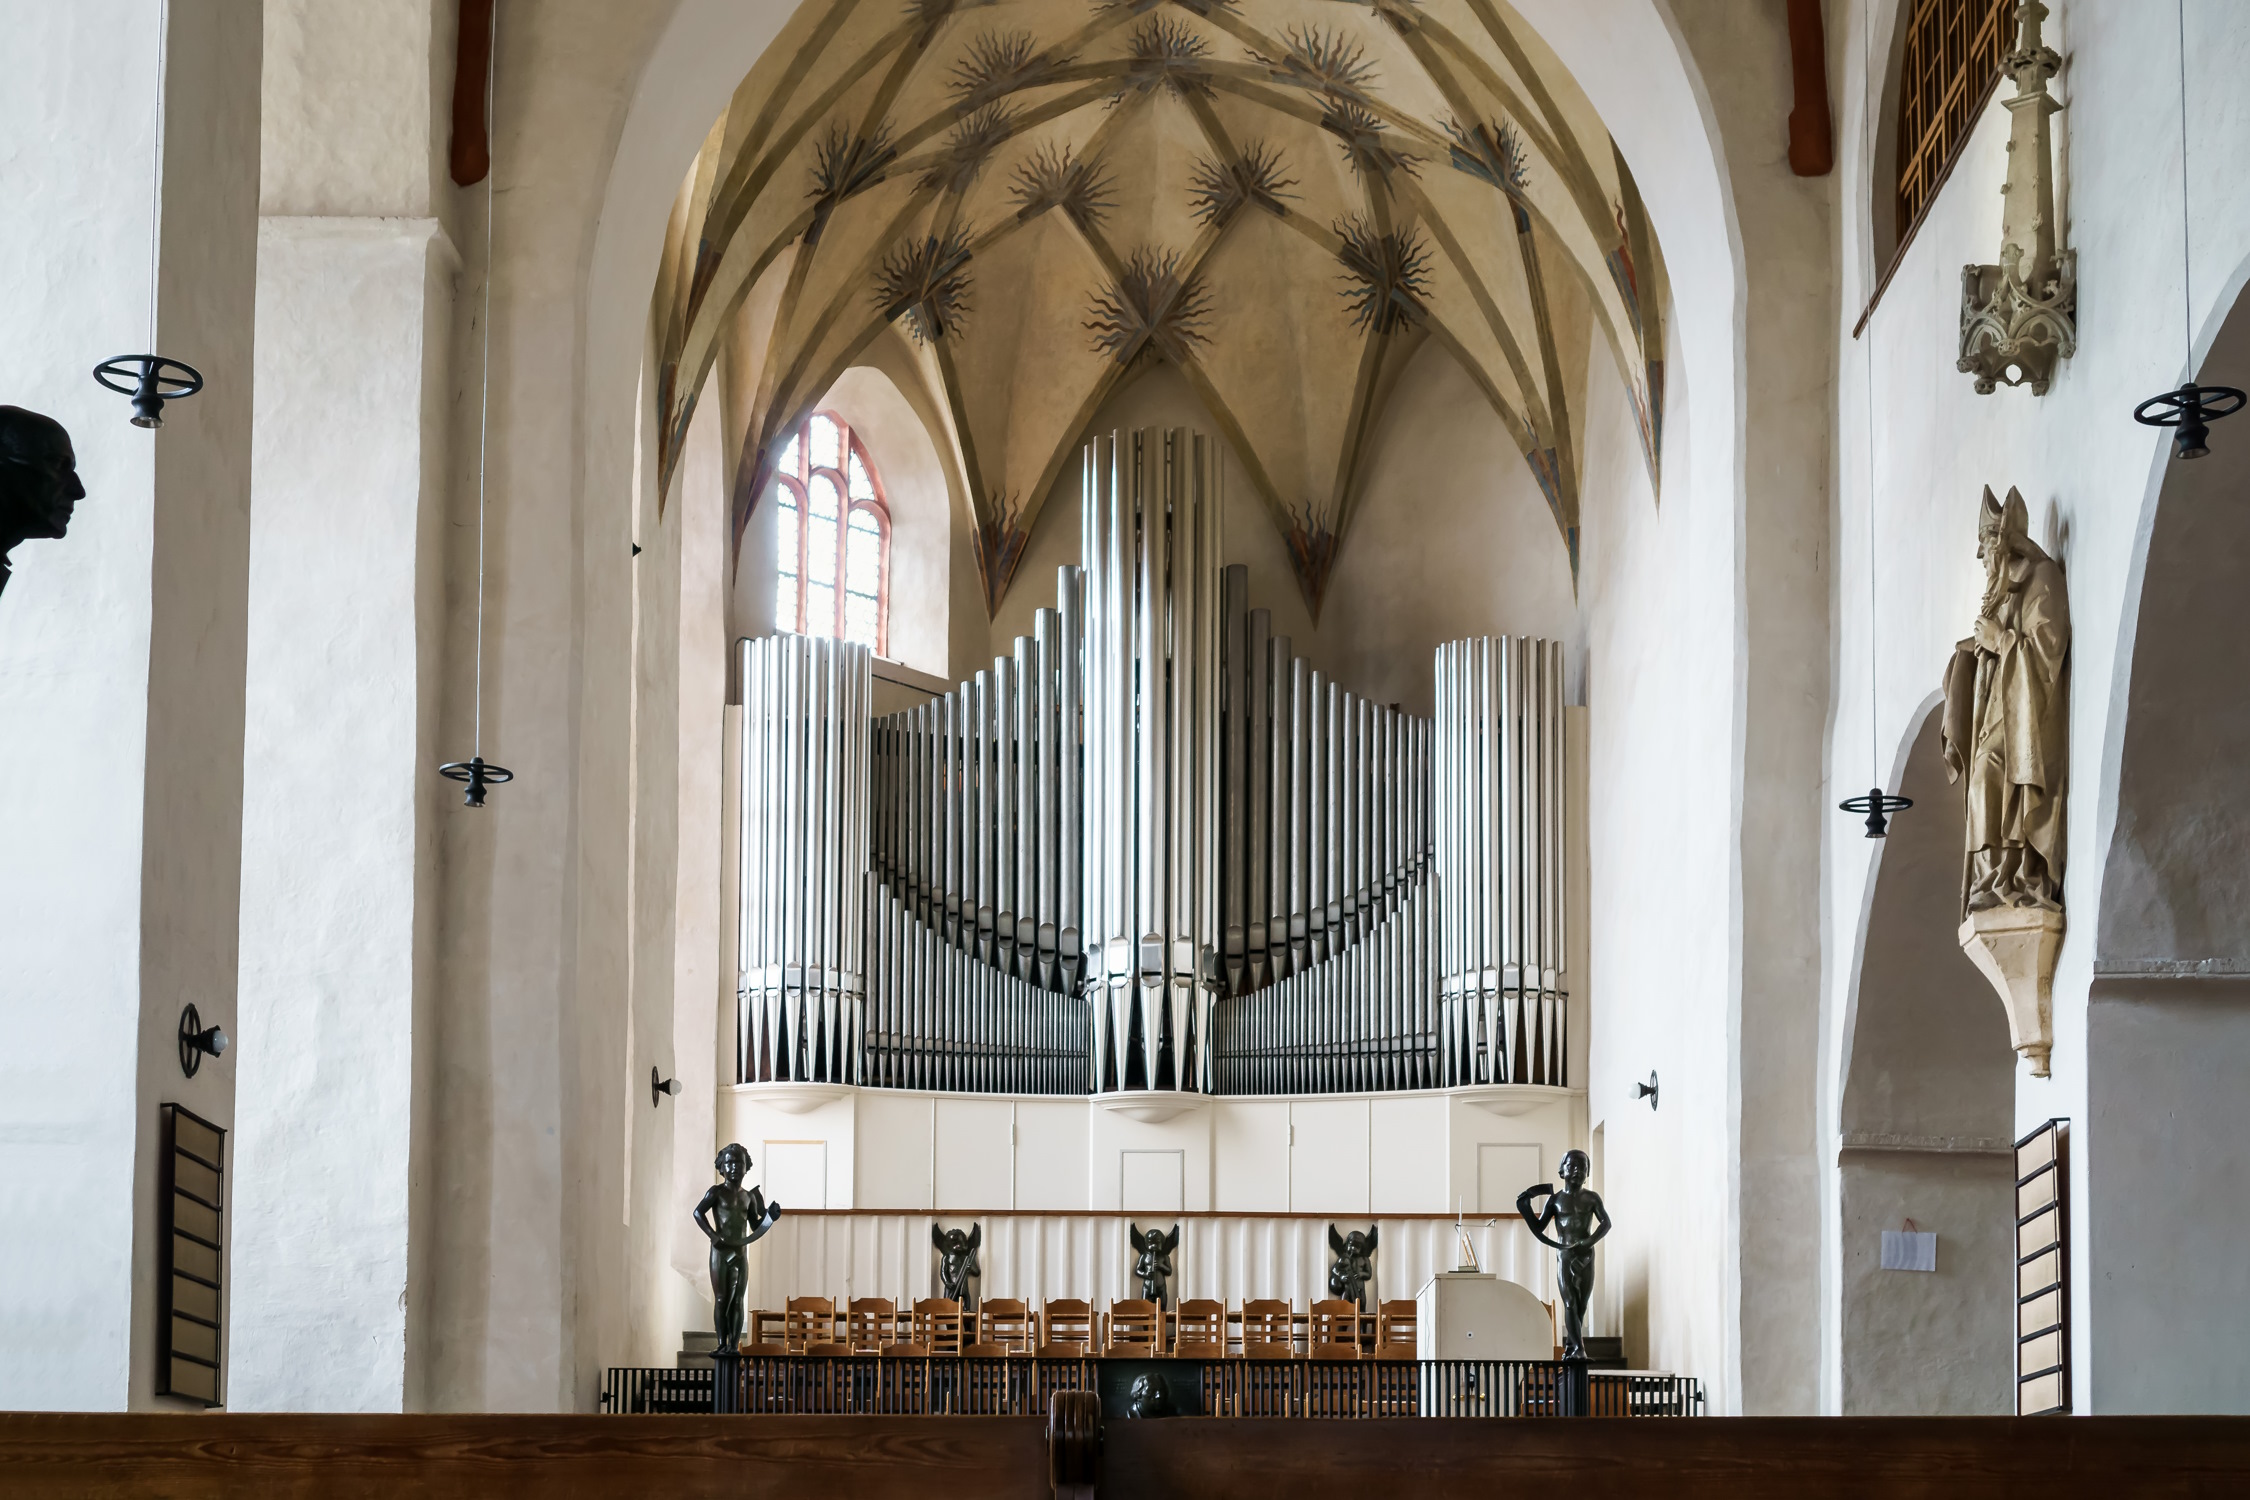 Jehmlich-Orgel mit Chor-Empore, rechts an der Wand die Skulptur des Bischofs Donatus von Arezzo. Foto: Radler59, CC BY-SA 4.0, https://commons.wikimedia.org/w/index.php?curid=51333171